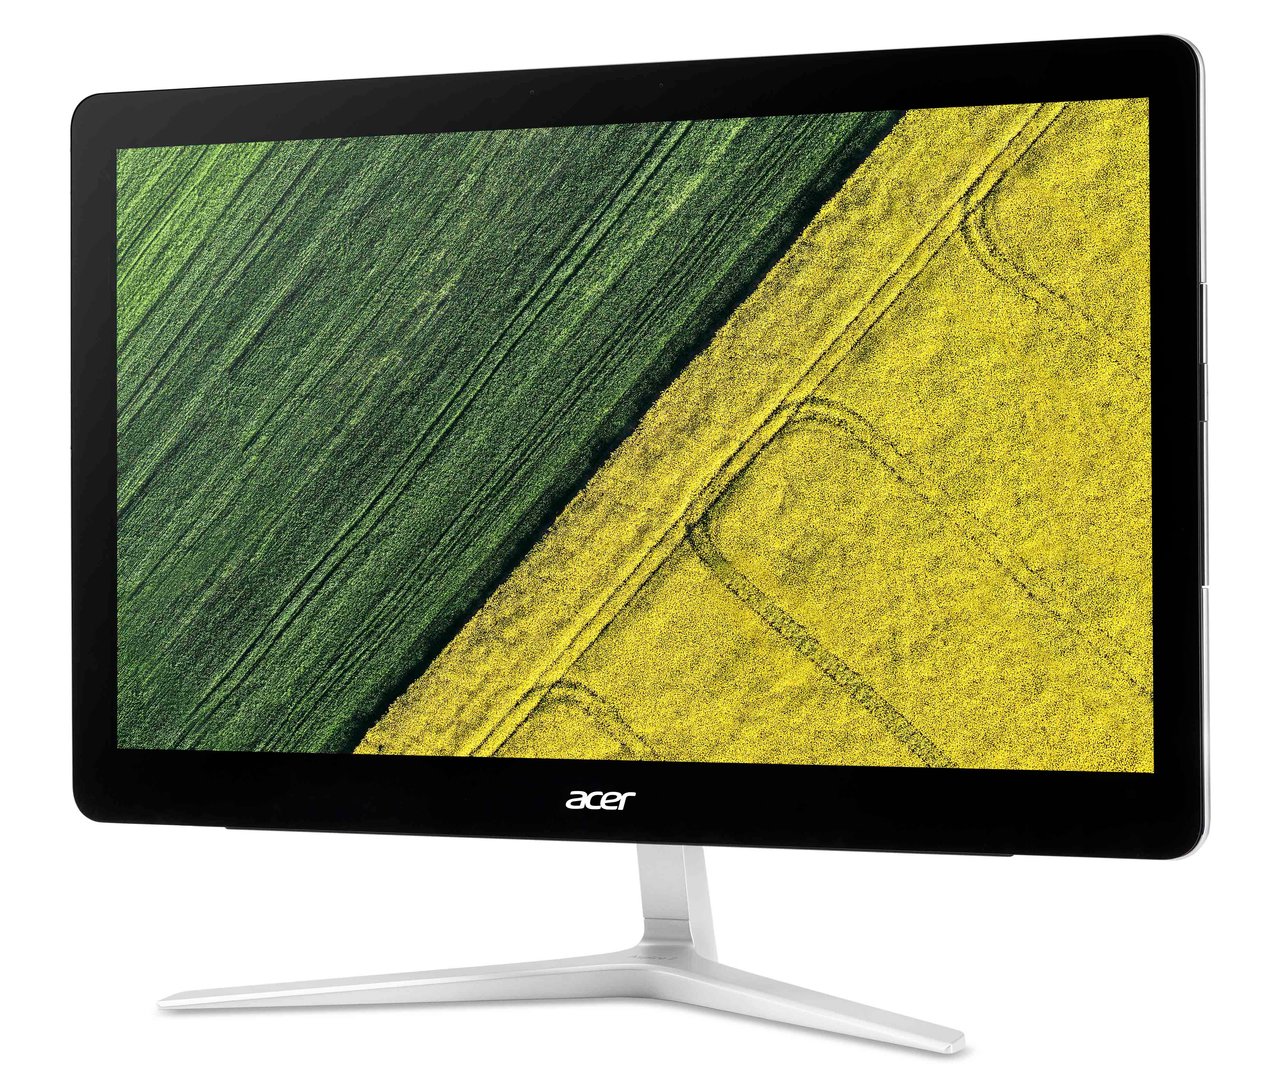 Acer Aspire Z24